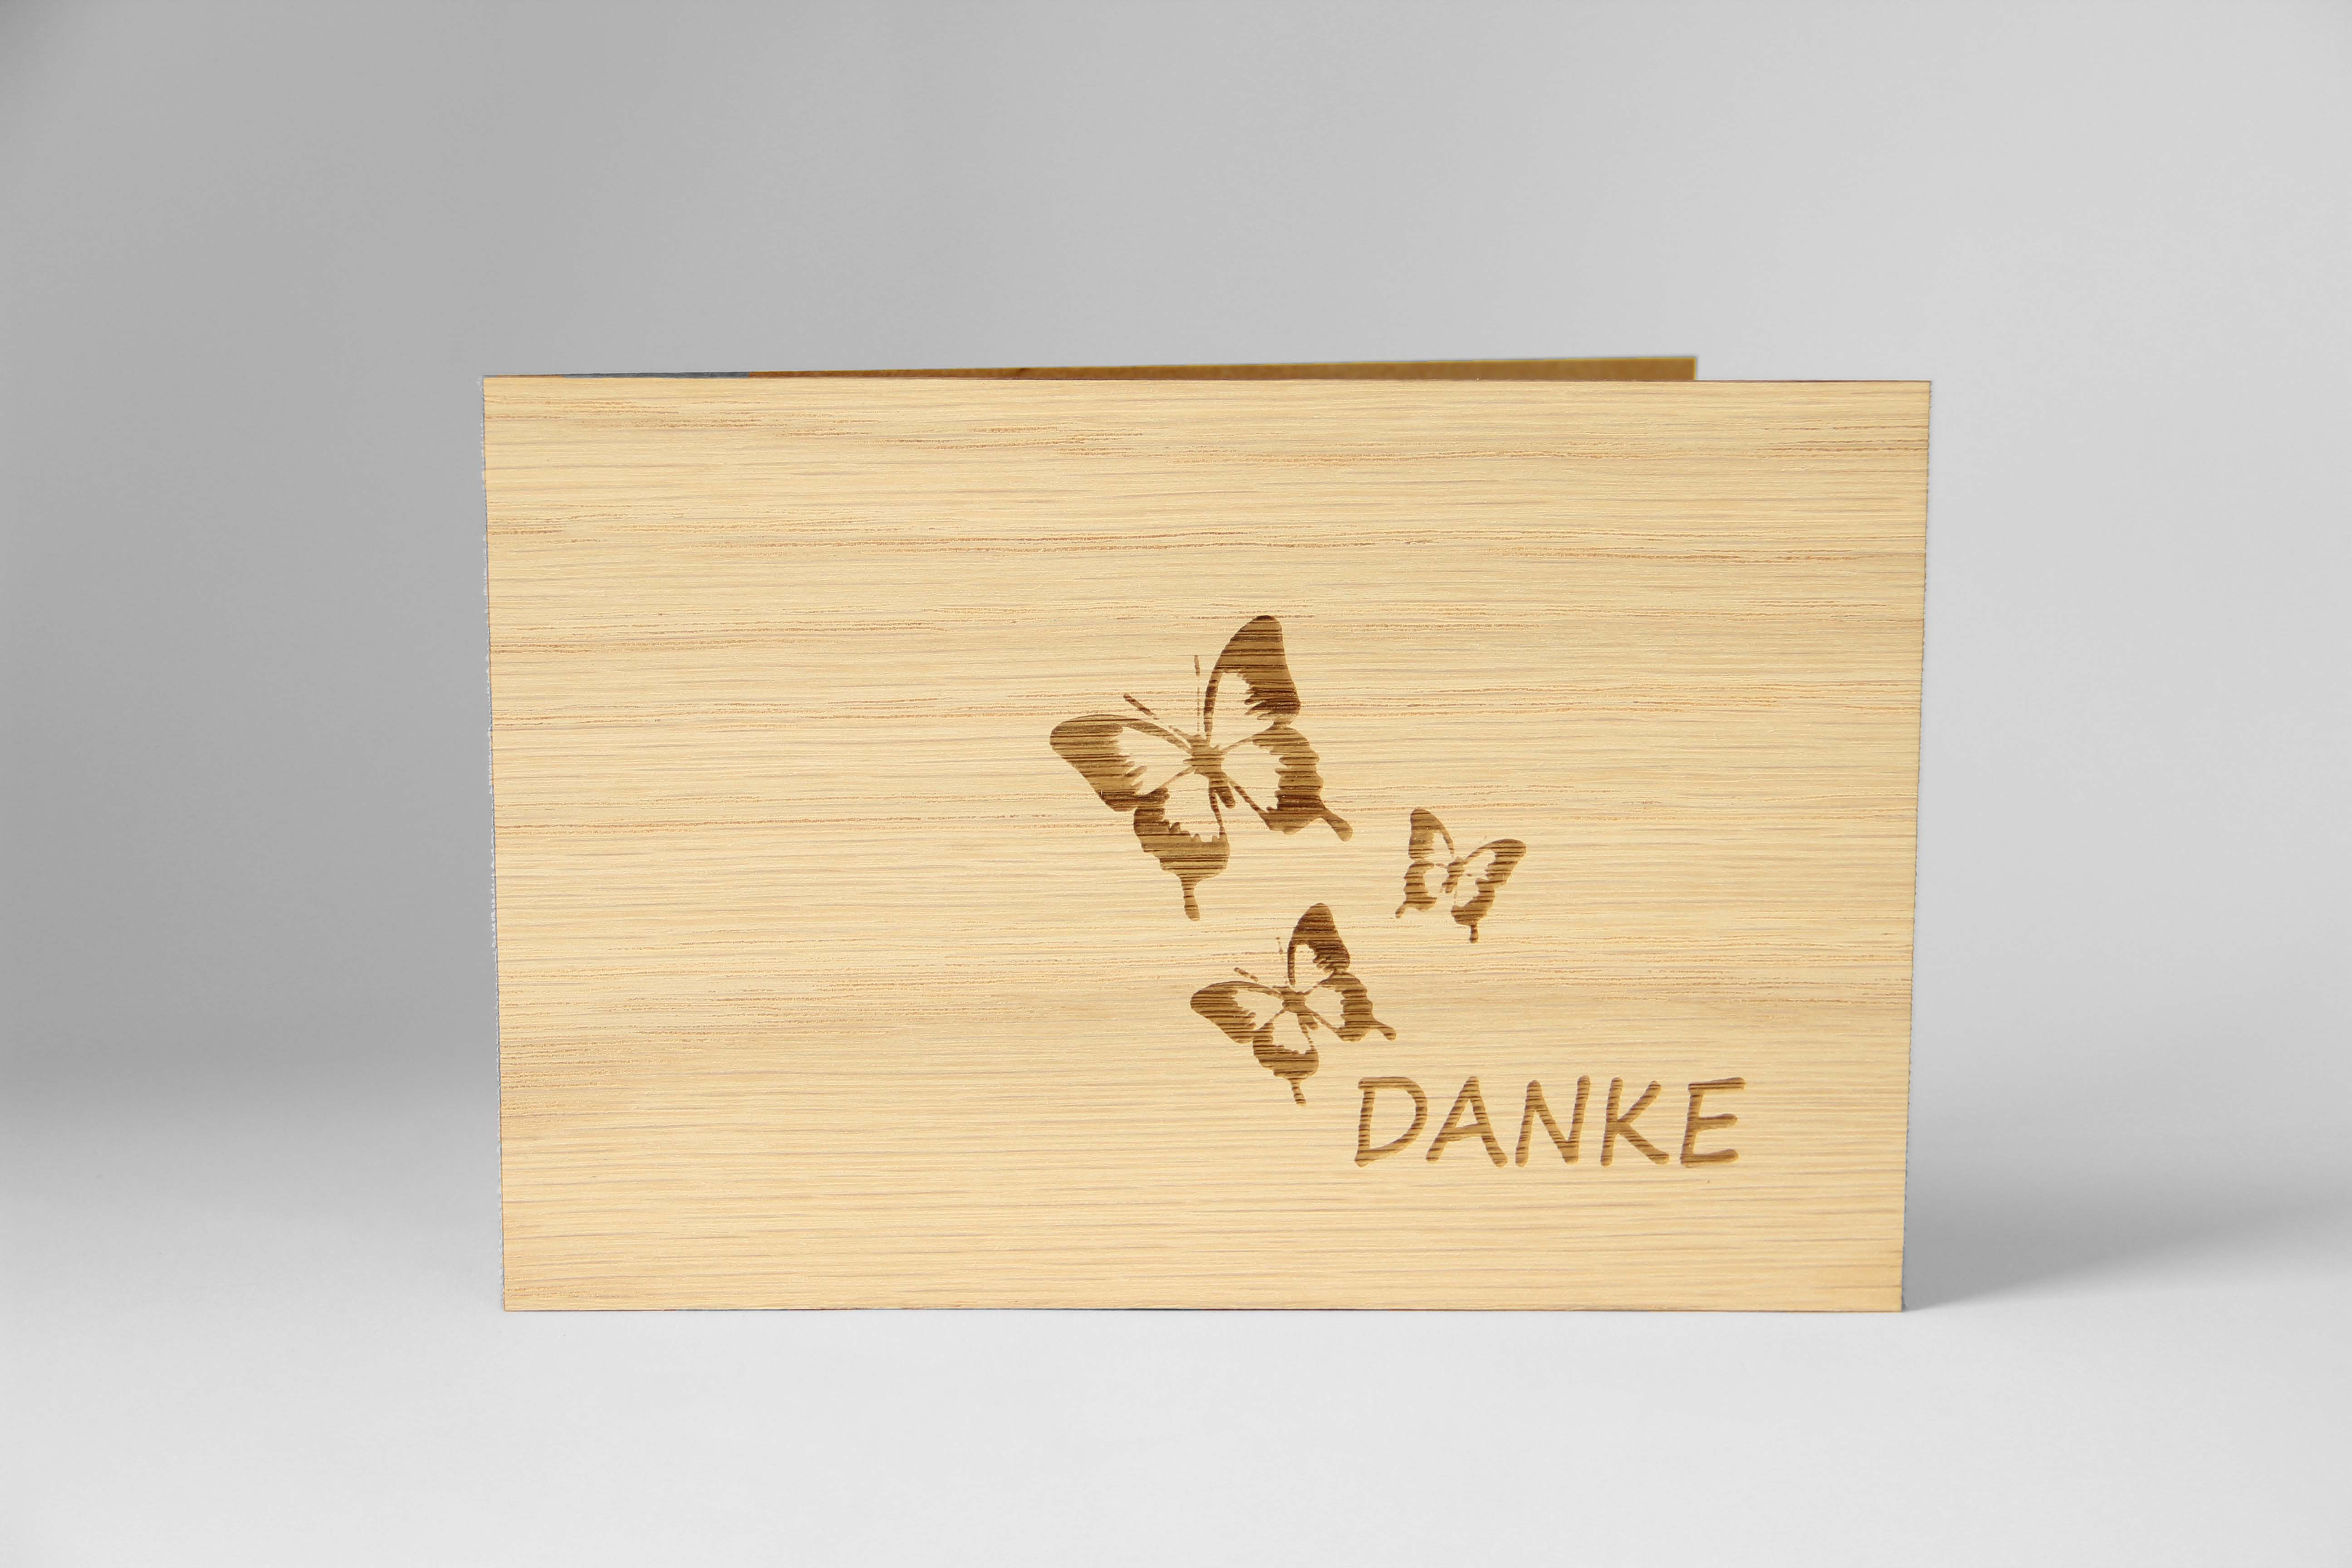 Holzgrusskarten - Dankeskarte "Danke" aus Eiche, Schmetterling